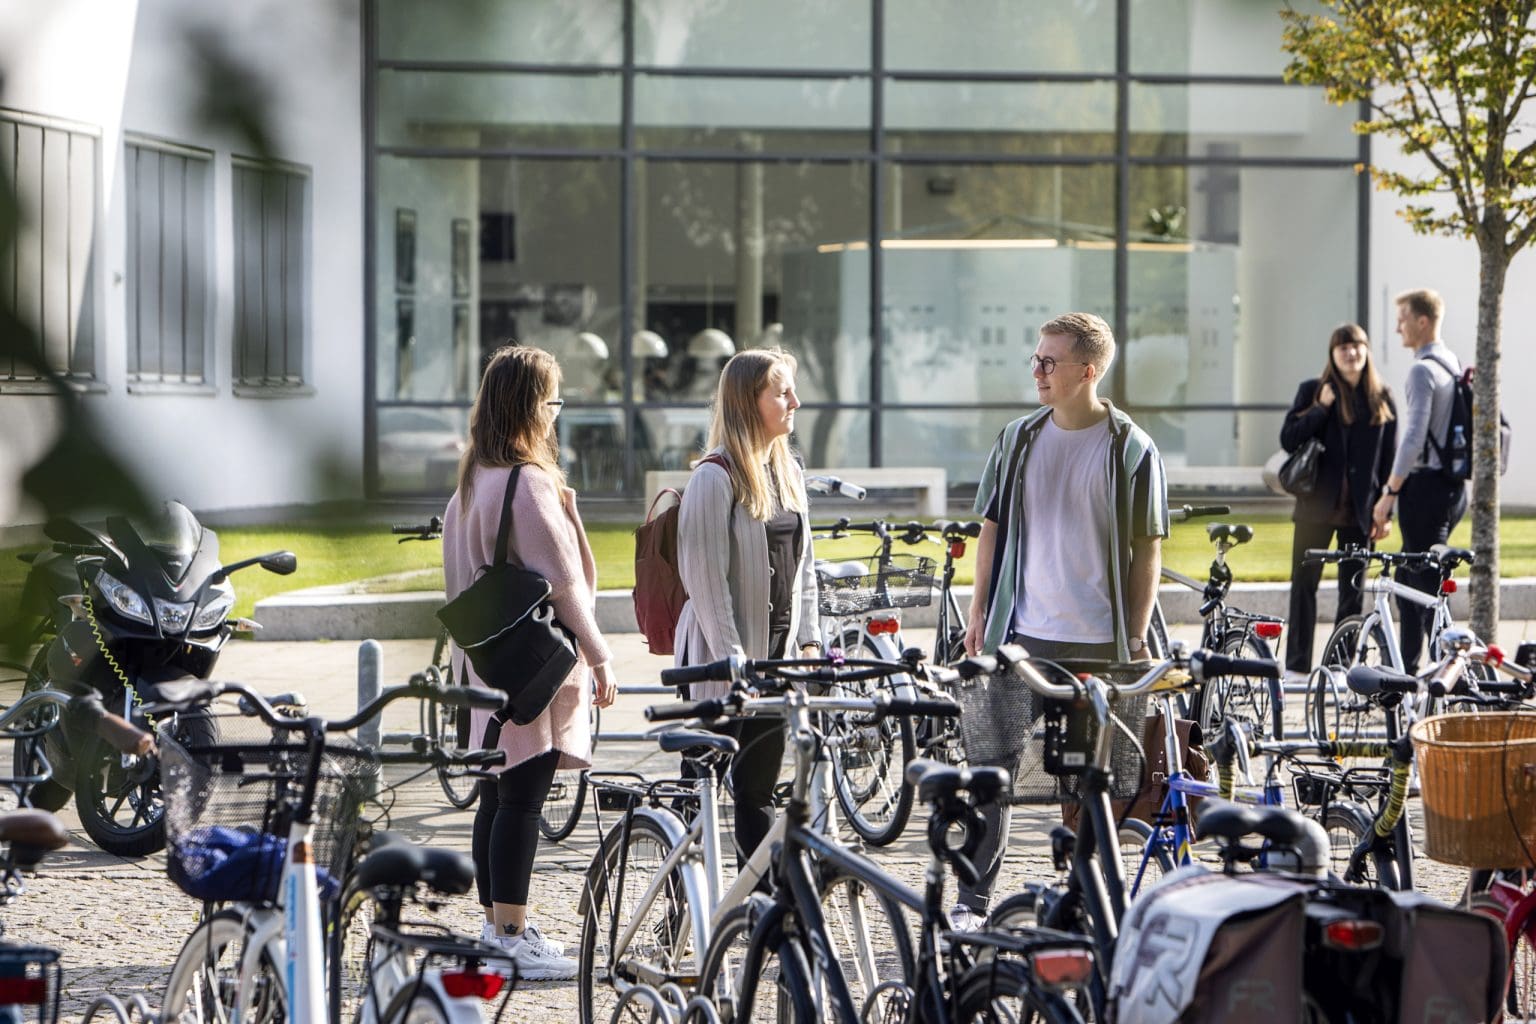 Et billede af tre unge mennesker der står og snakker ved en cykel parkeringsplads